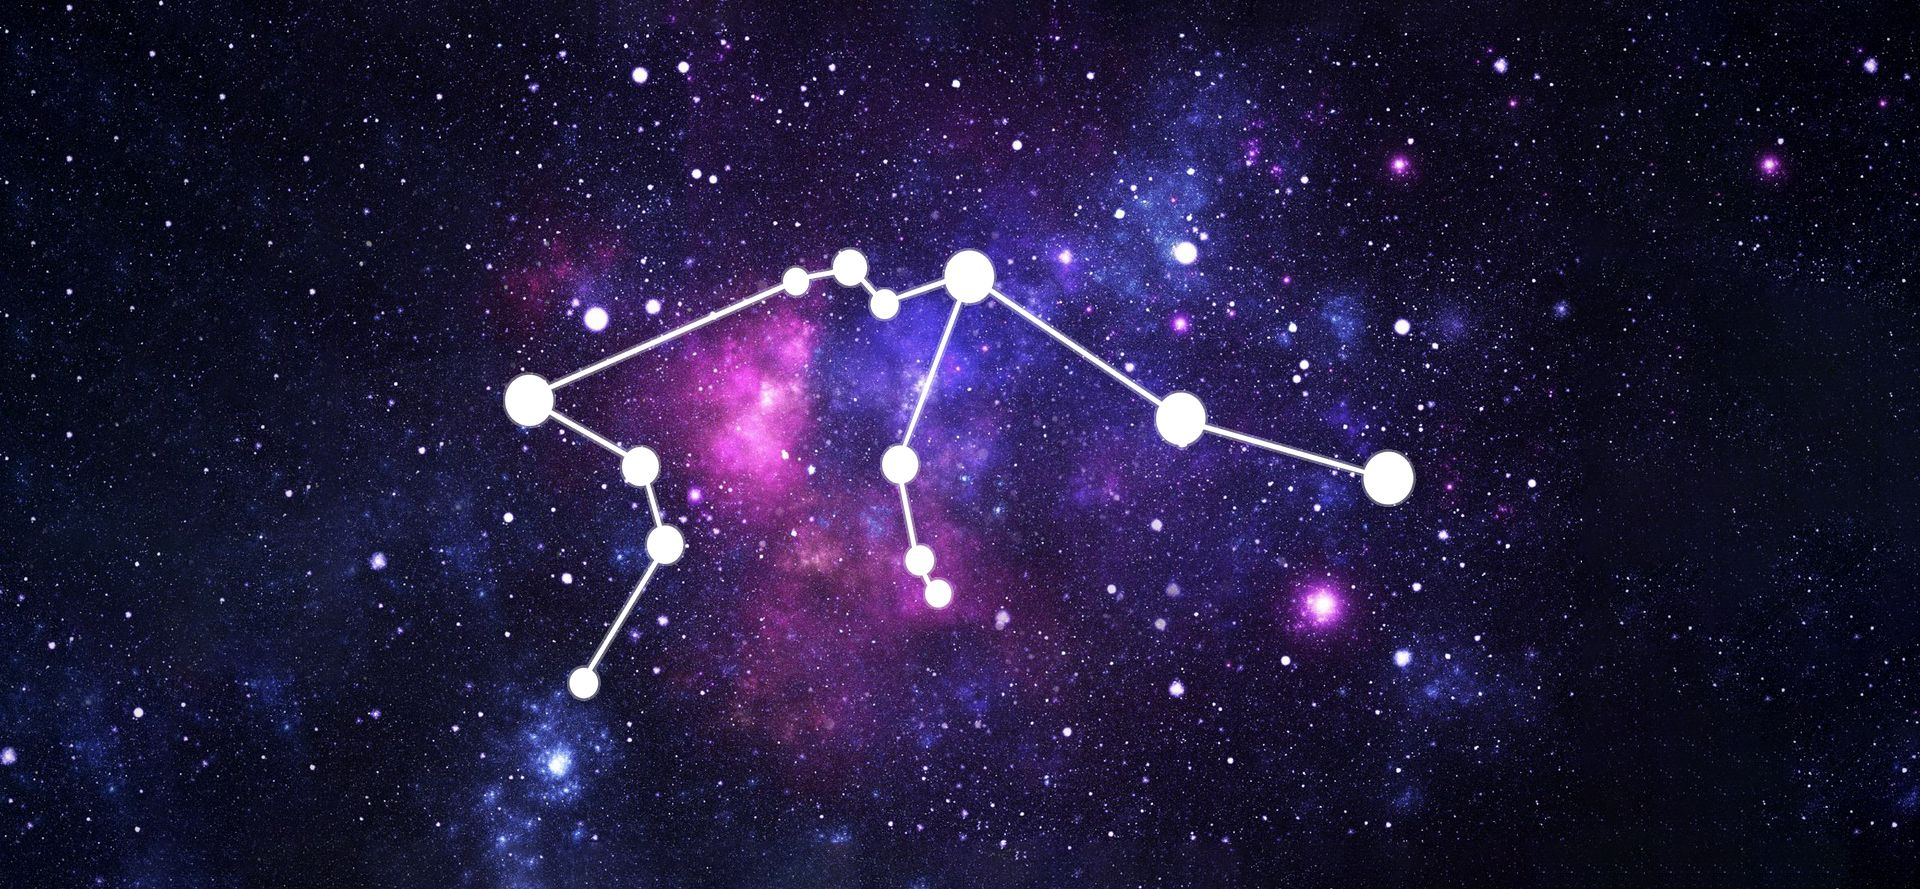 Aquarius constellation in Galaxy.